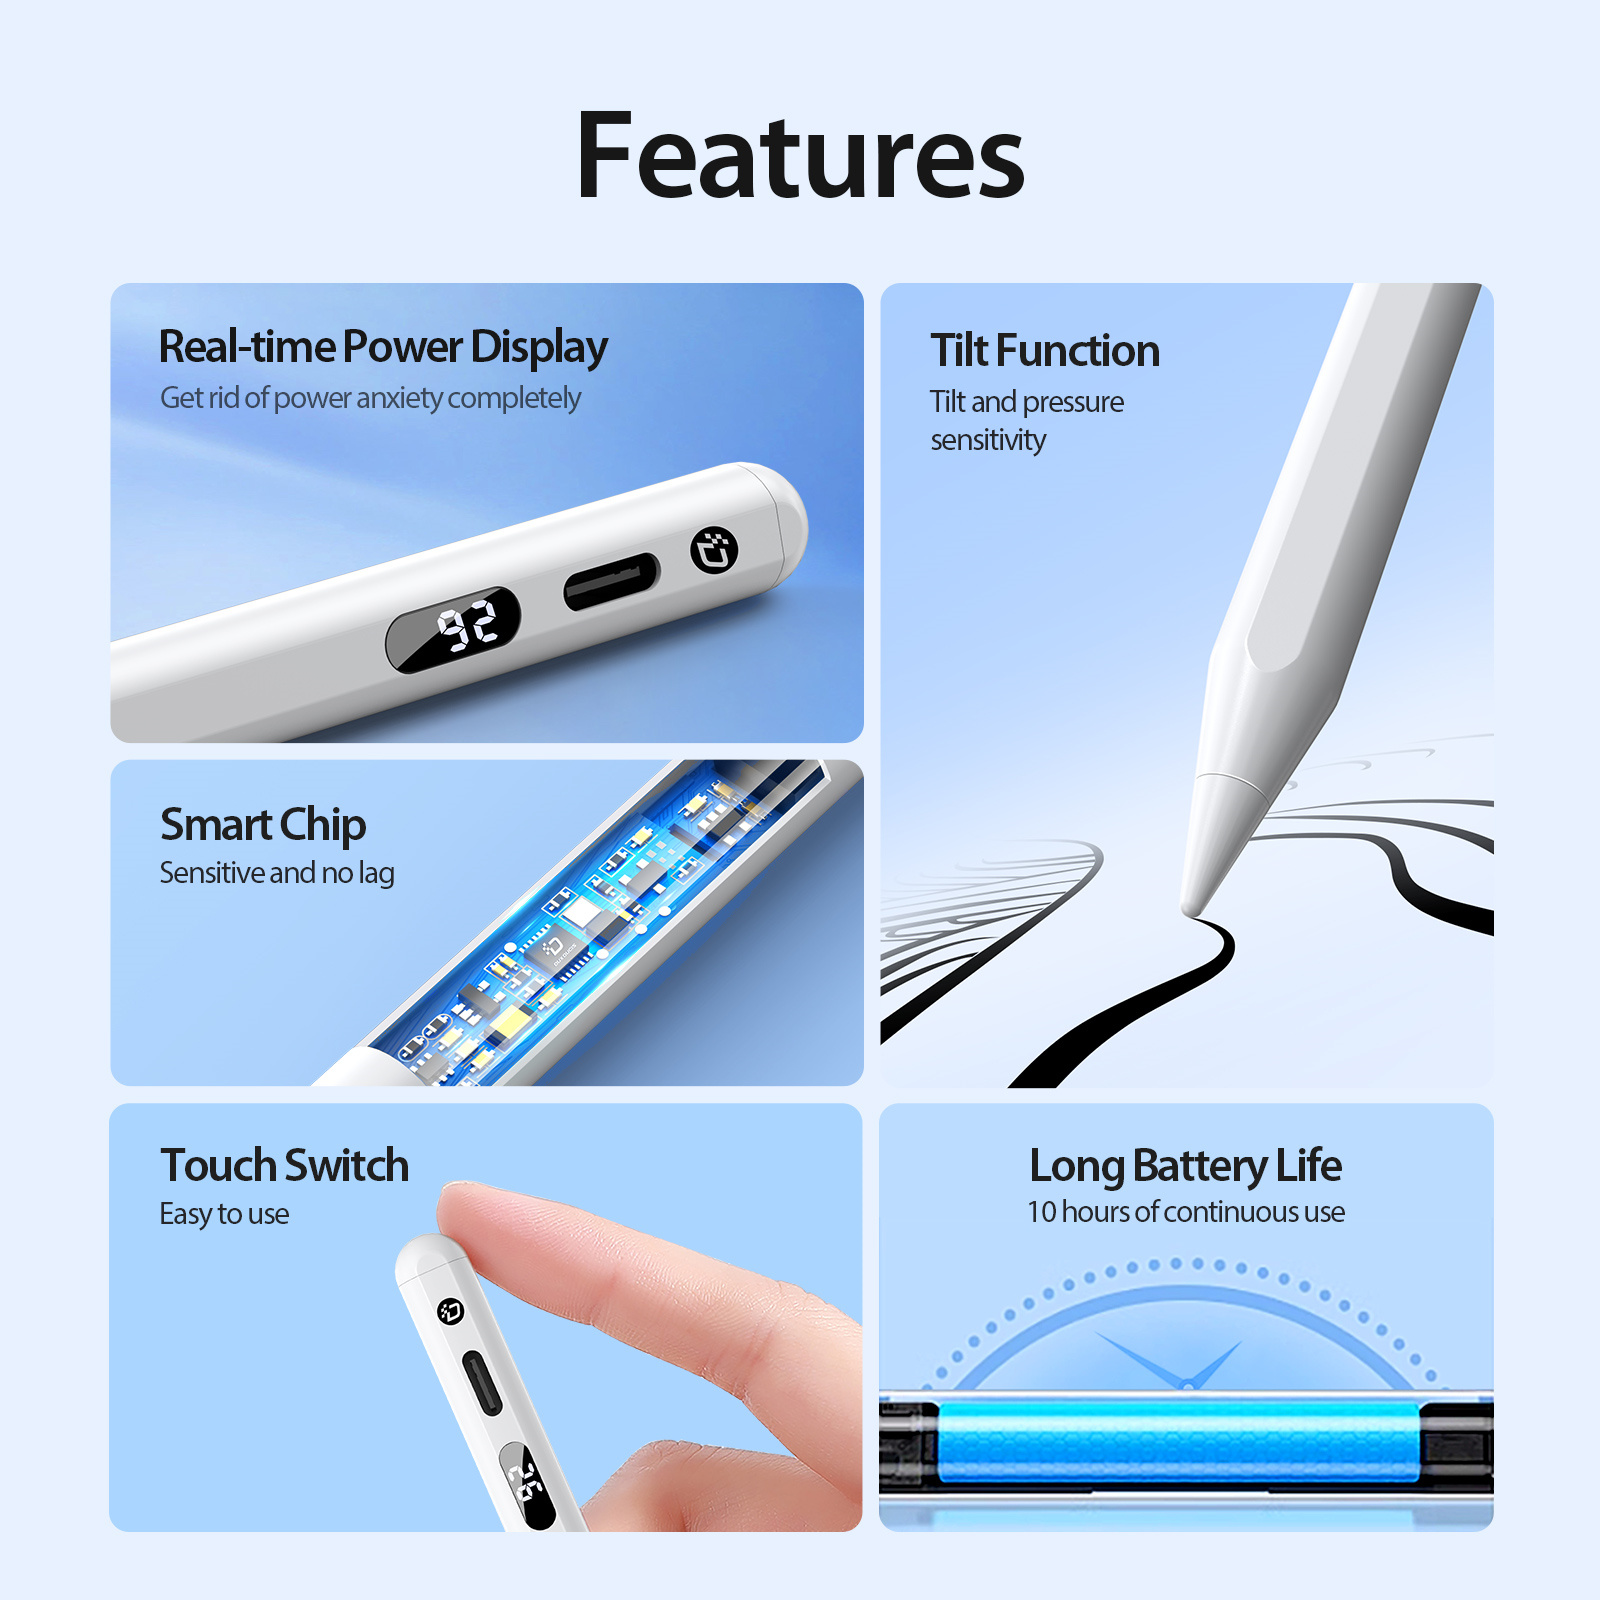 Bút cảm ứng Dux Dicis SP-02 Stylus Pen dành cho iPad Pro/ Ipad Air/ Ipad Mini/ Ipad Gen 6,7,8,9,10 - Hàng chính hãng